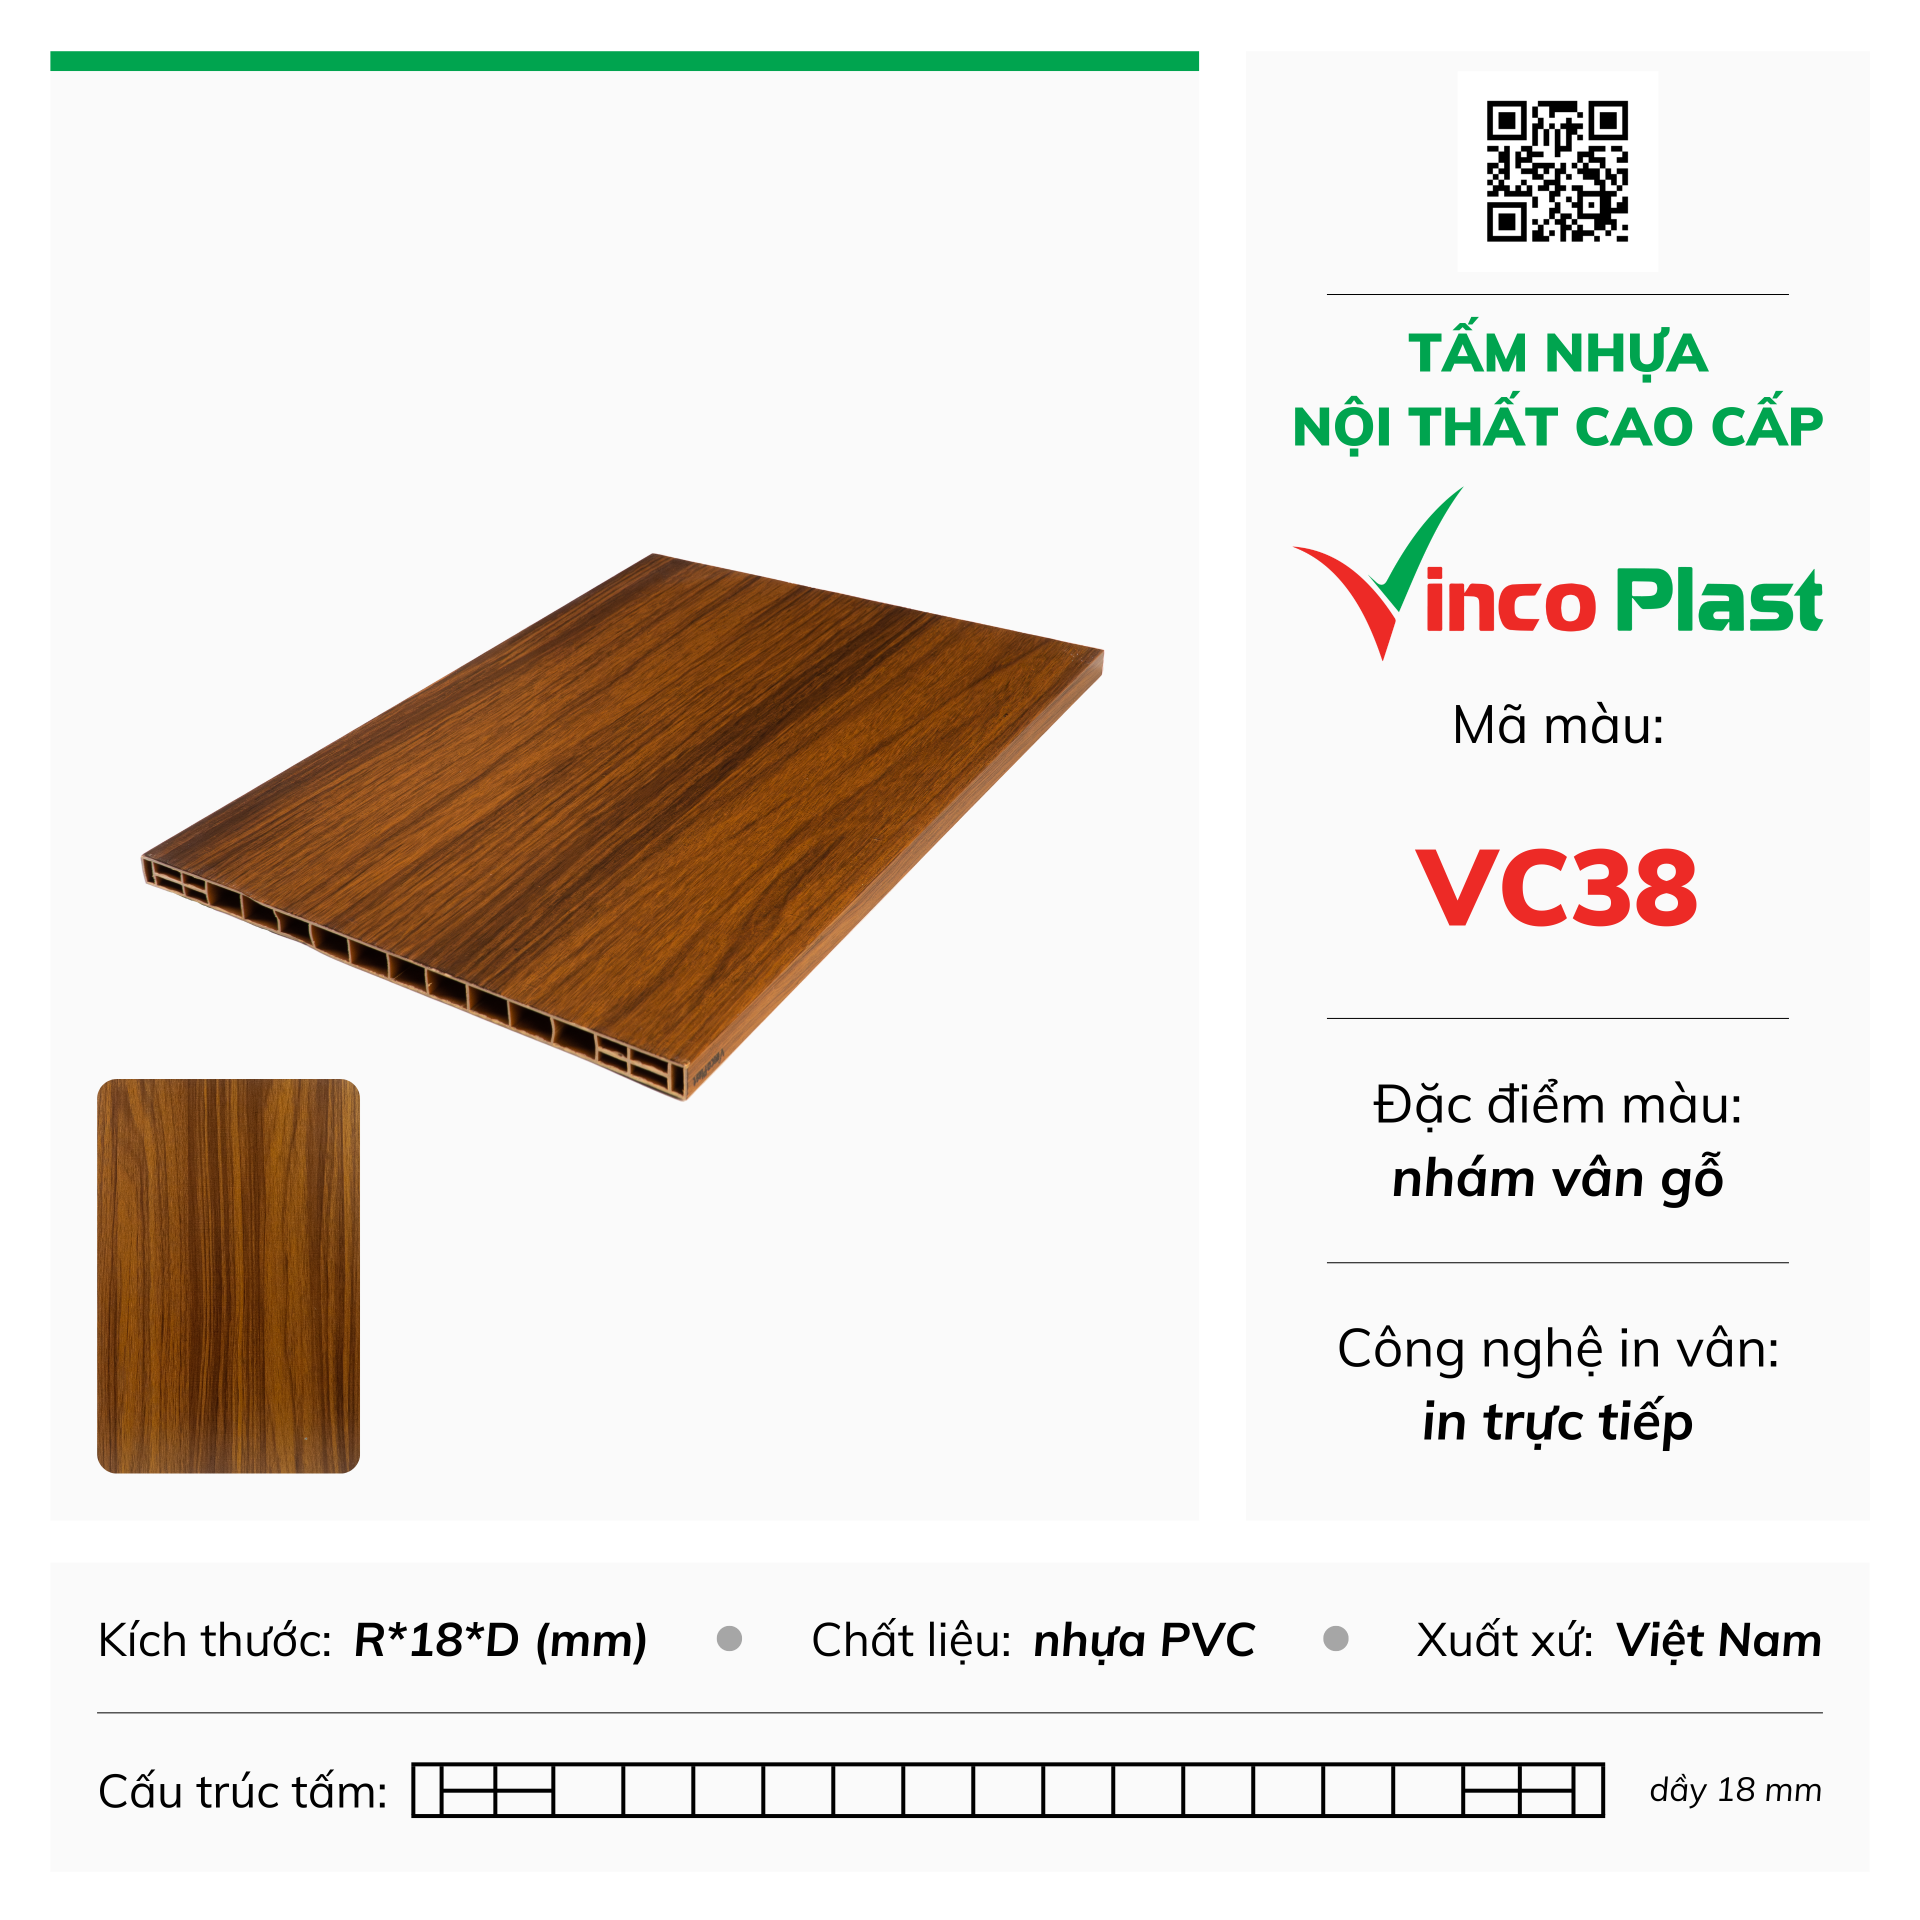 Tấm nhựa nội thất cao cấp Vincoplast màu vc38